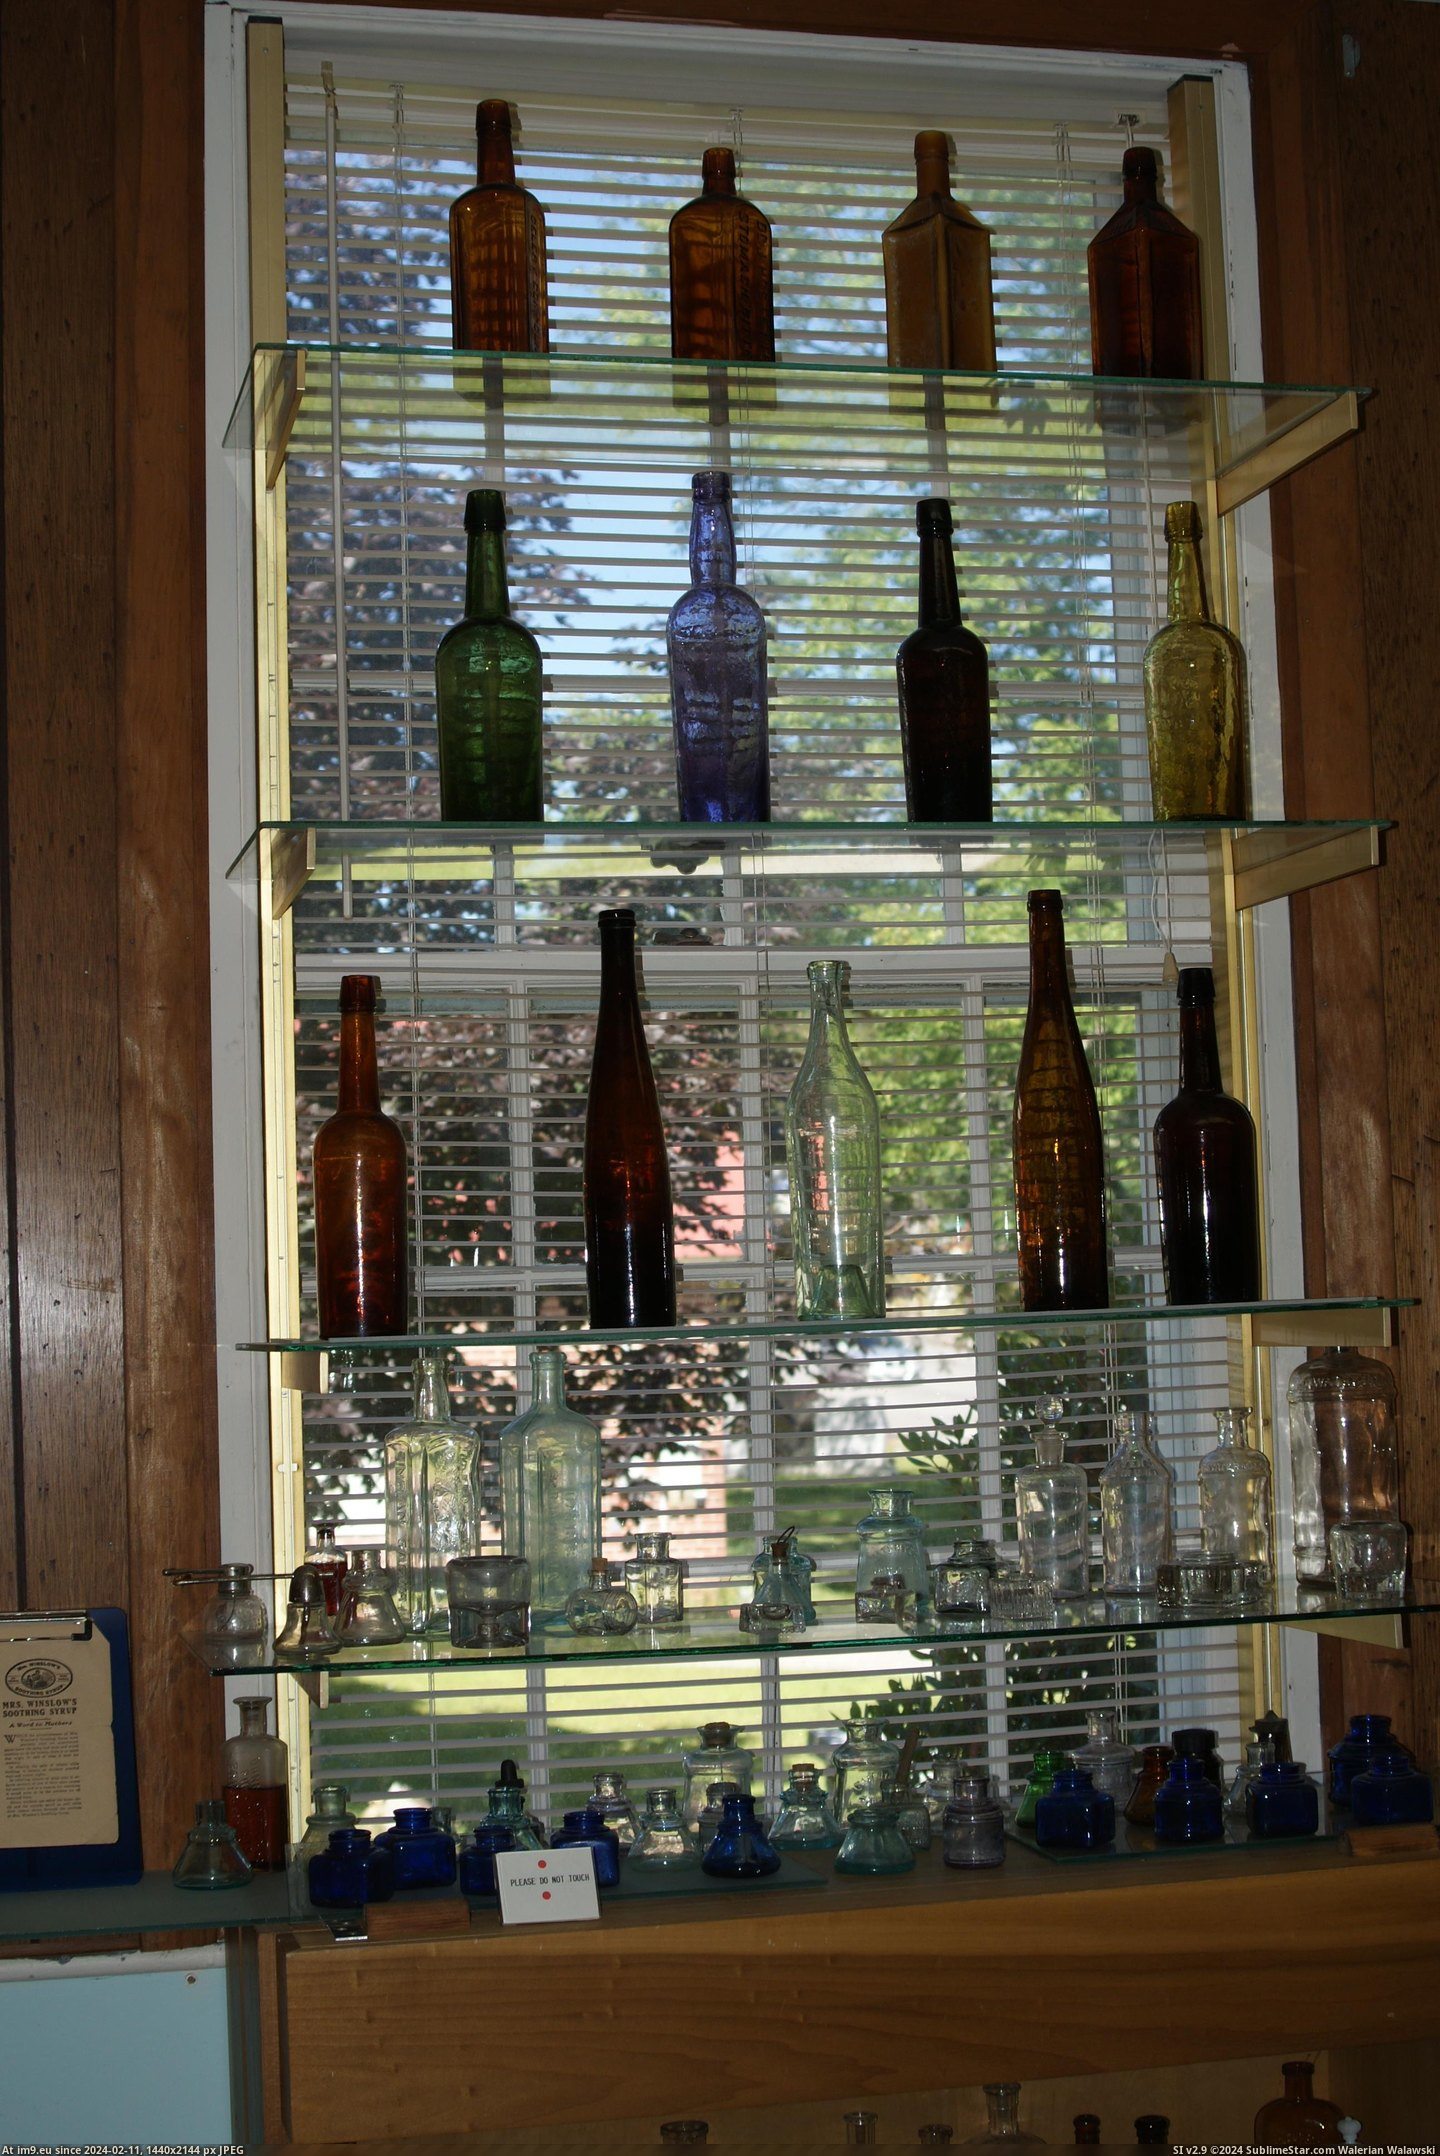 #Museum #Maine #Naples #Bottle MAINE BOTTLE MUSEUM NAPLES (10) Pic. (Изображение из альбом MAINE BOTTLE MUSEUM))